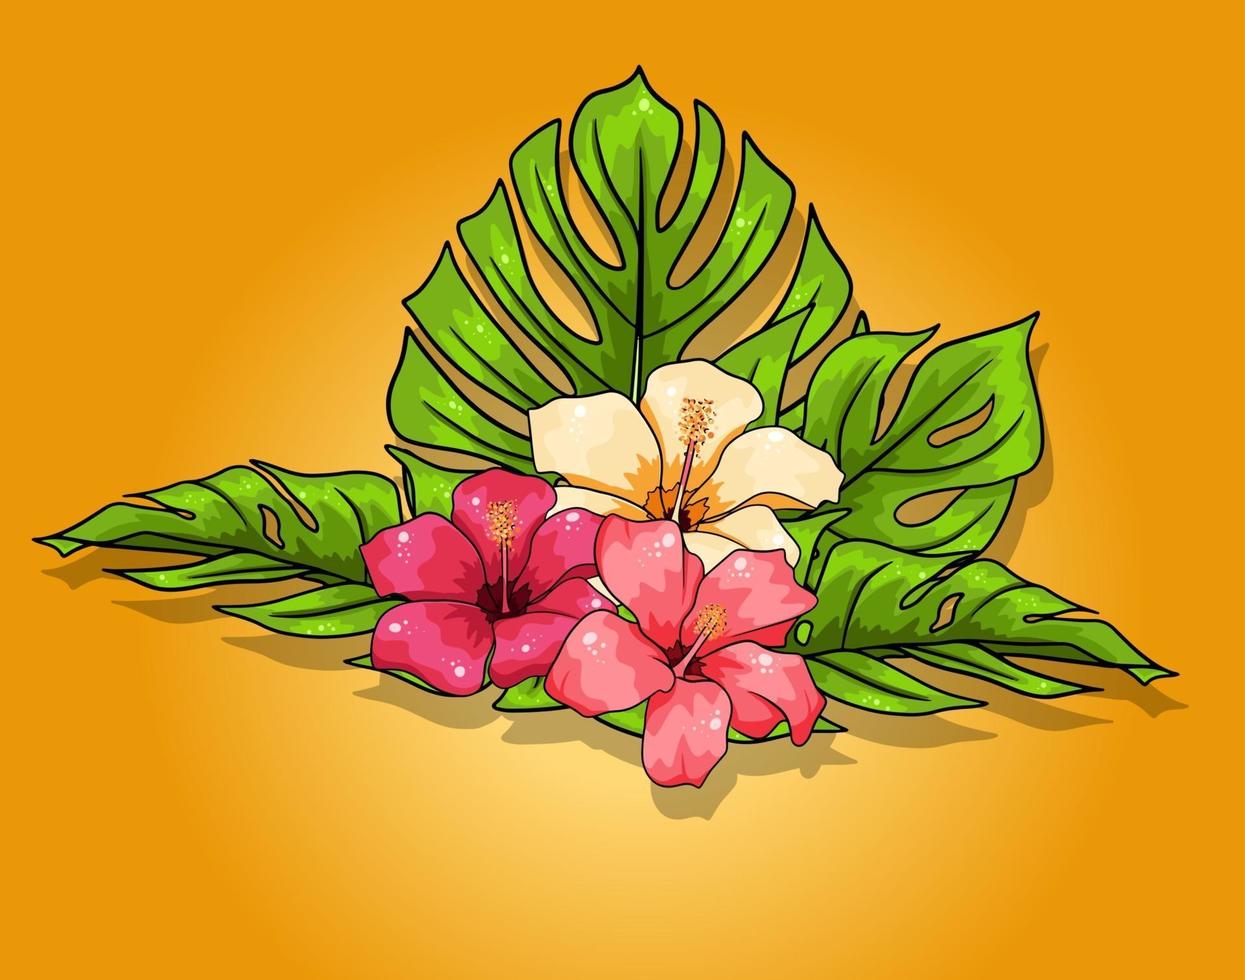 colección tropical con flores exóticas y hojas talladas en estilo de dibujos animados vector